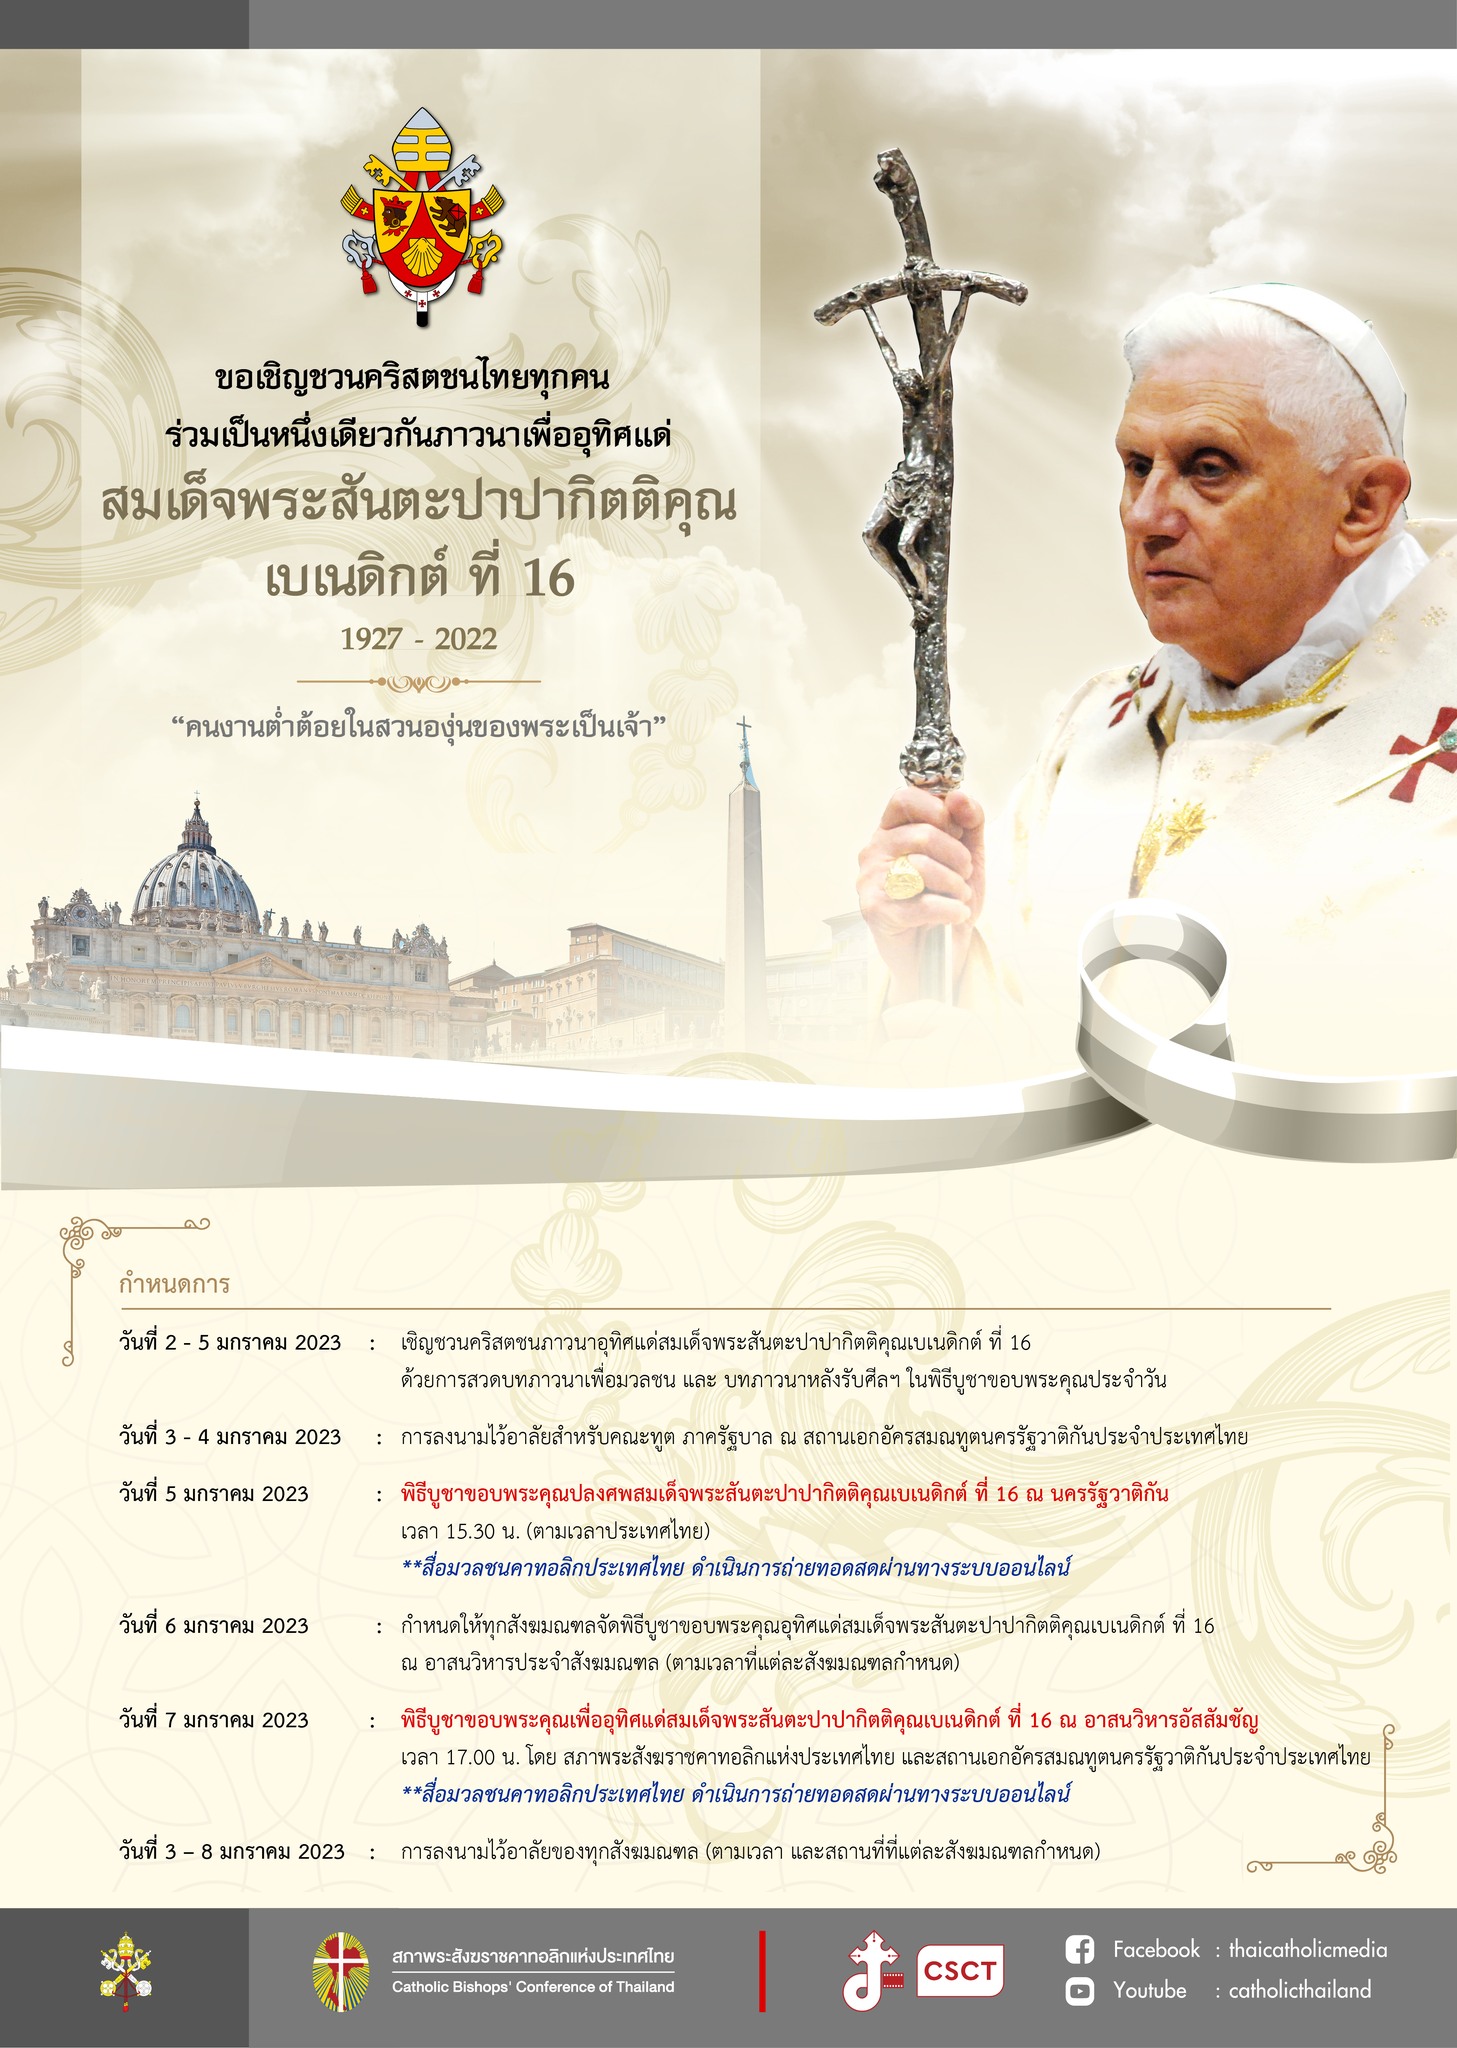 ขอเชิญชวนคริสตชนไทยทุกคน ร่วมเป็นหนึ่งเดียวกันภาวนาเพื่ออุทิศแด่ สมเด็จพระสันตะปาปากิตติคุณ เบเนดิกต์ ที่ 16